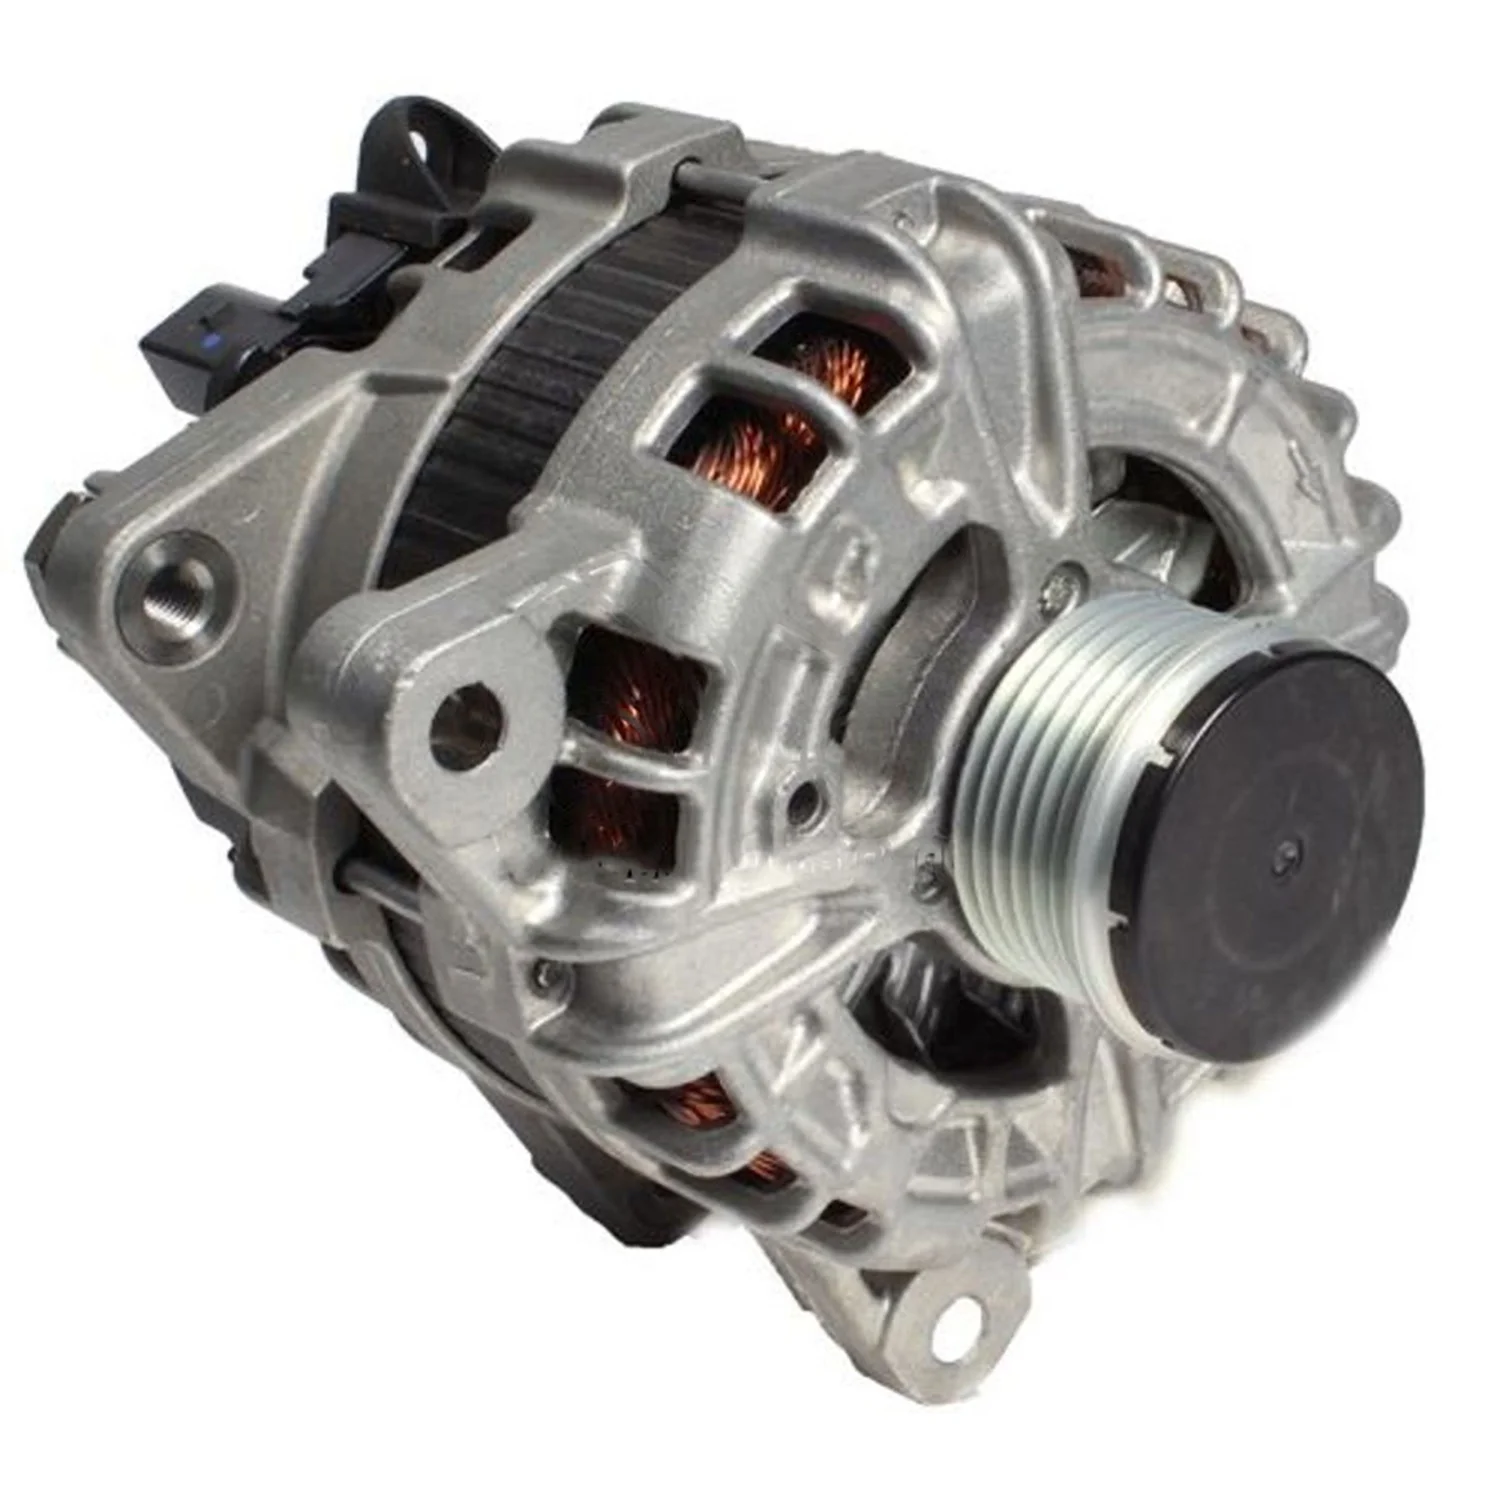 

Auto Dynamo Alternator Generator For BSH Ford Lan Rove 0125812013 0125812014 0125812061 0125812062 EJ3210300AC EJ3210300AD